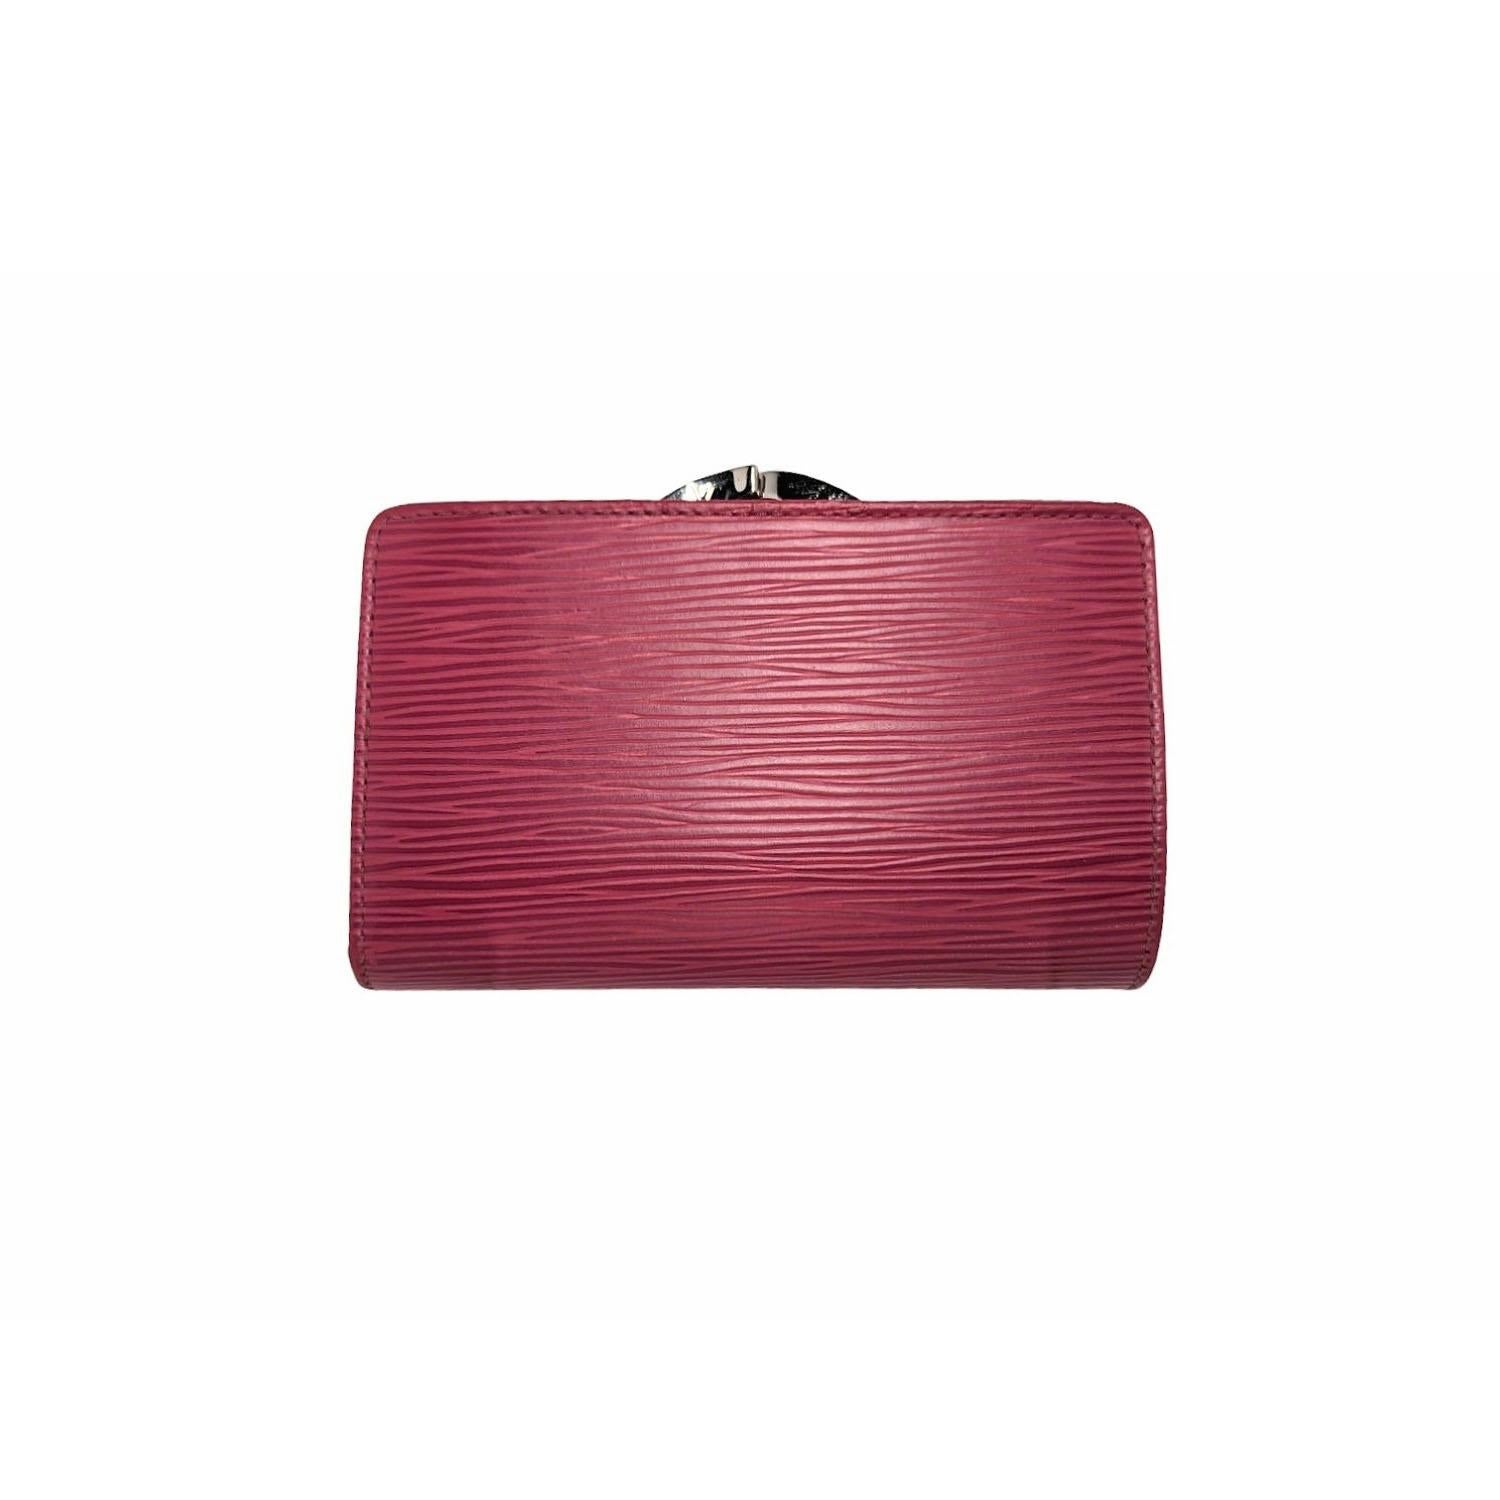 Louis Vuitton Epi French Purse Geldbörse in Castillan Rot. Diese elegante Clutch-Brieftasche ist aus dem für Louis Vuitton typischen strukturierten Epi-Leder in leuchtendem Rot gefertigt. Das Portemonnaie öffnet sich zu einem Innenraum aus rotem,